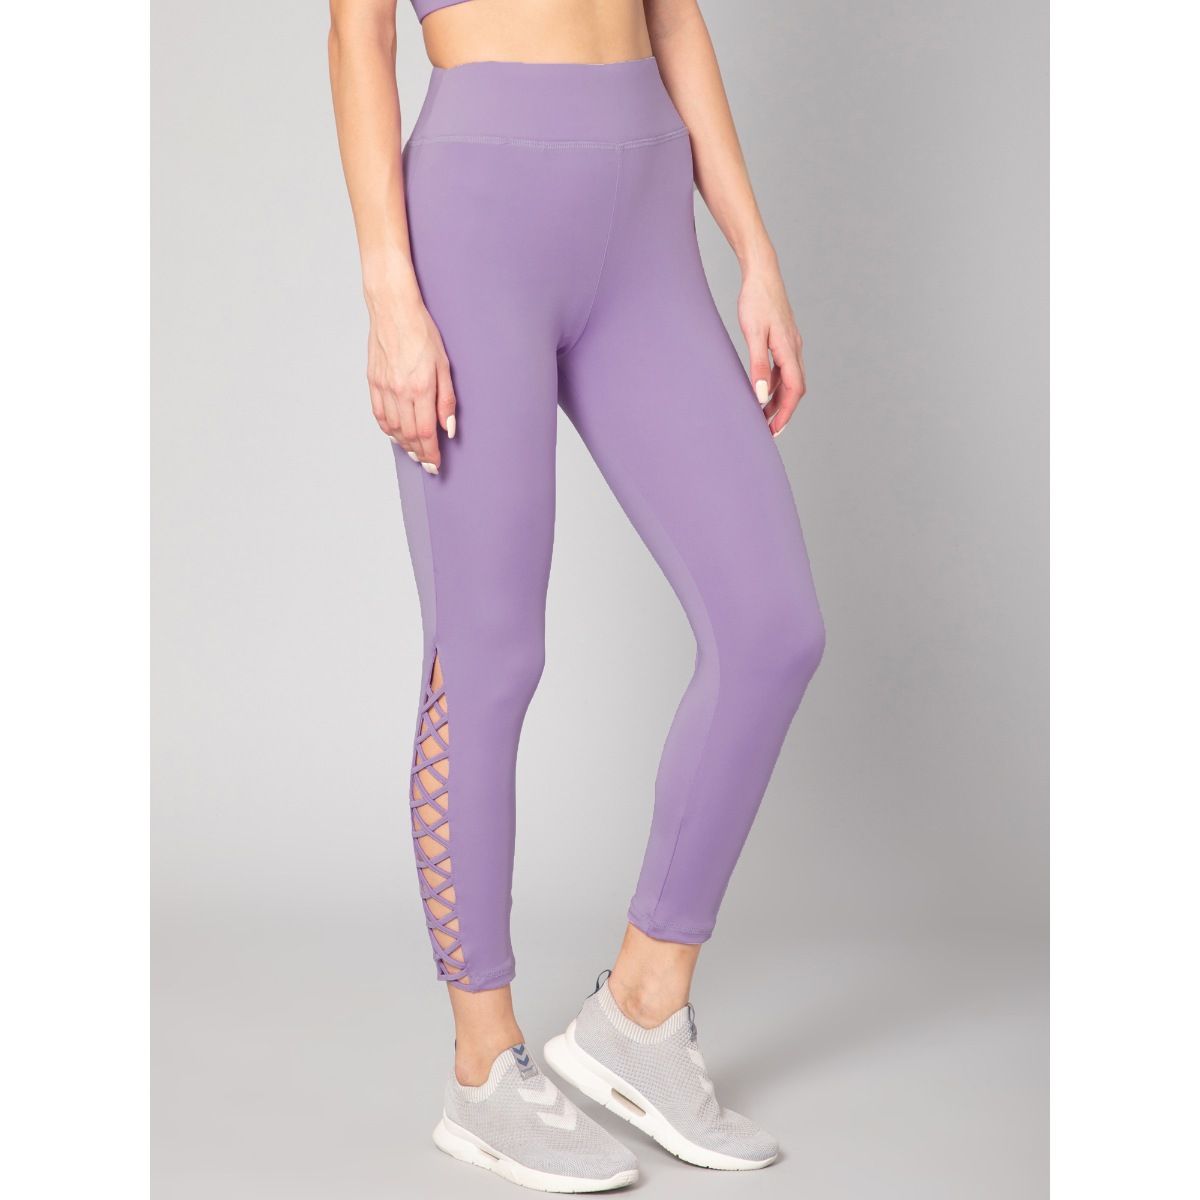 Purple lattice legging